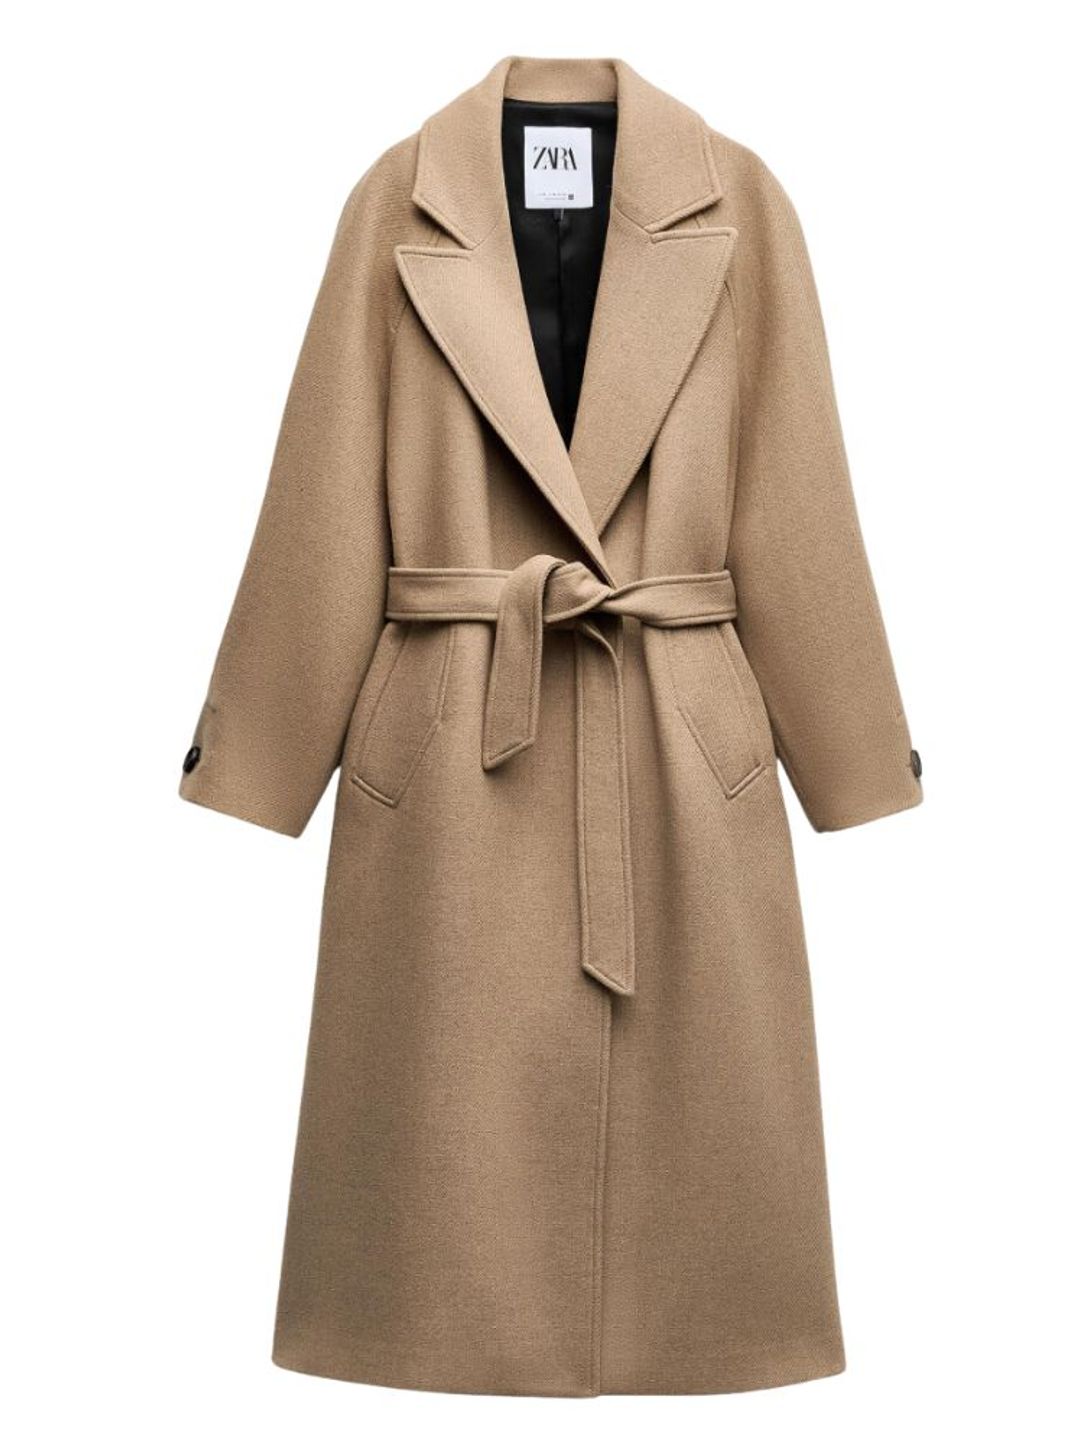 Zara belted camel coat